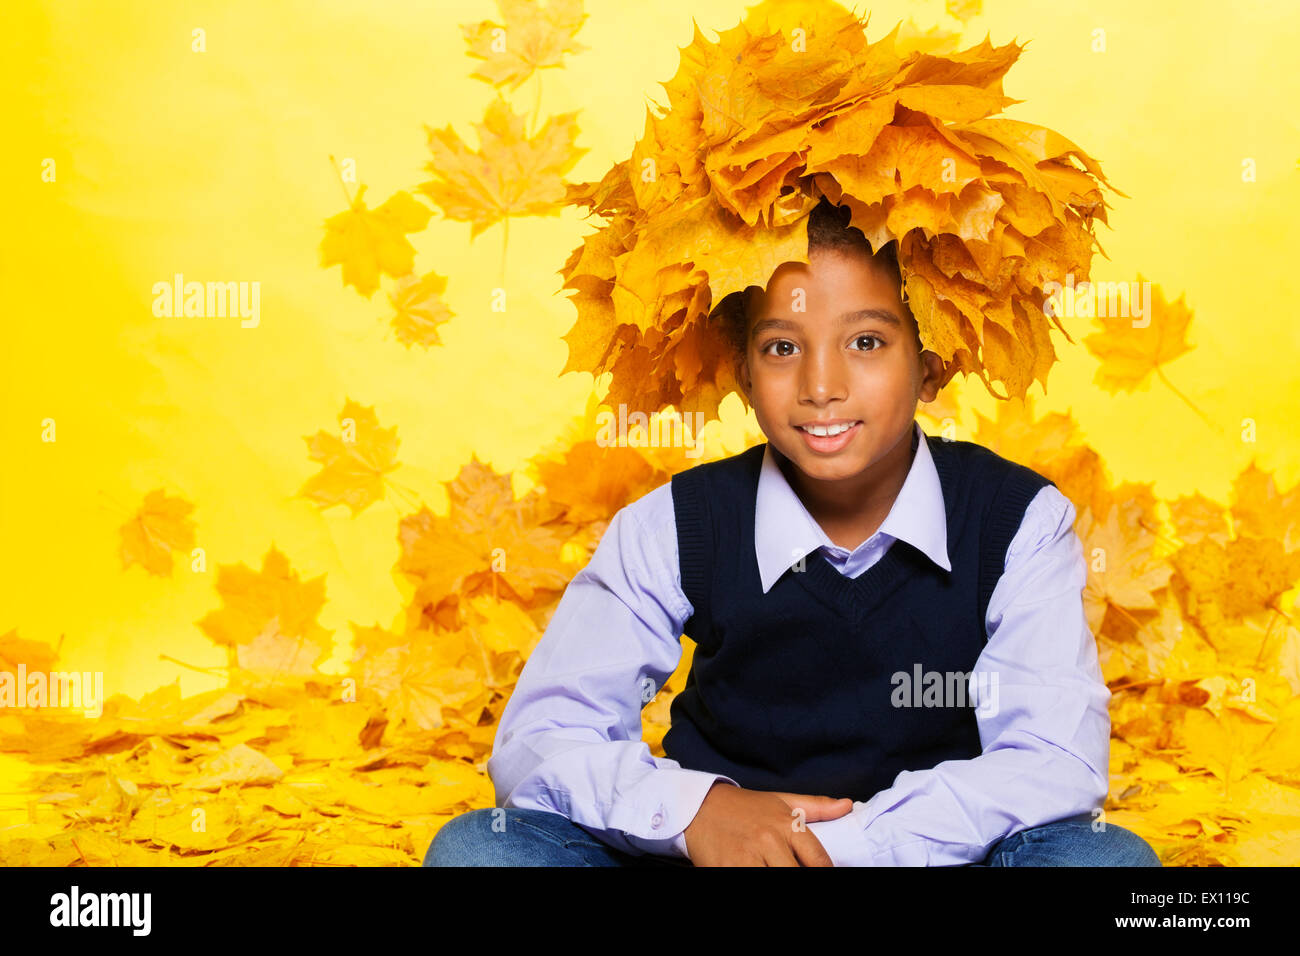 Smiling black boy wearing couronne de feuilles d'érable Banque D'Images